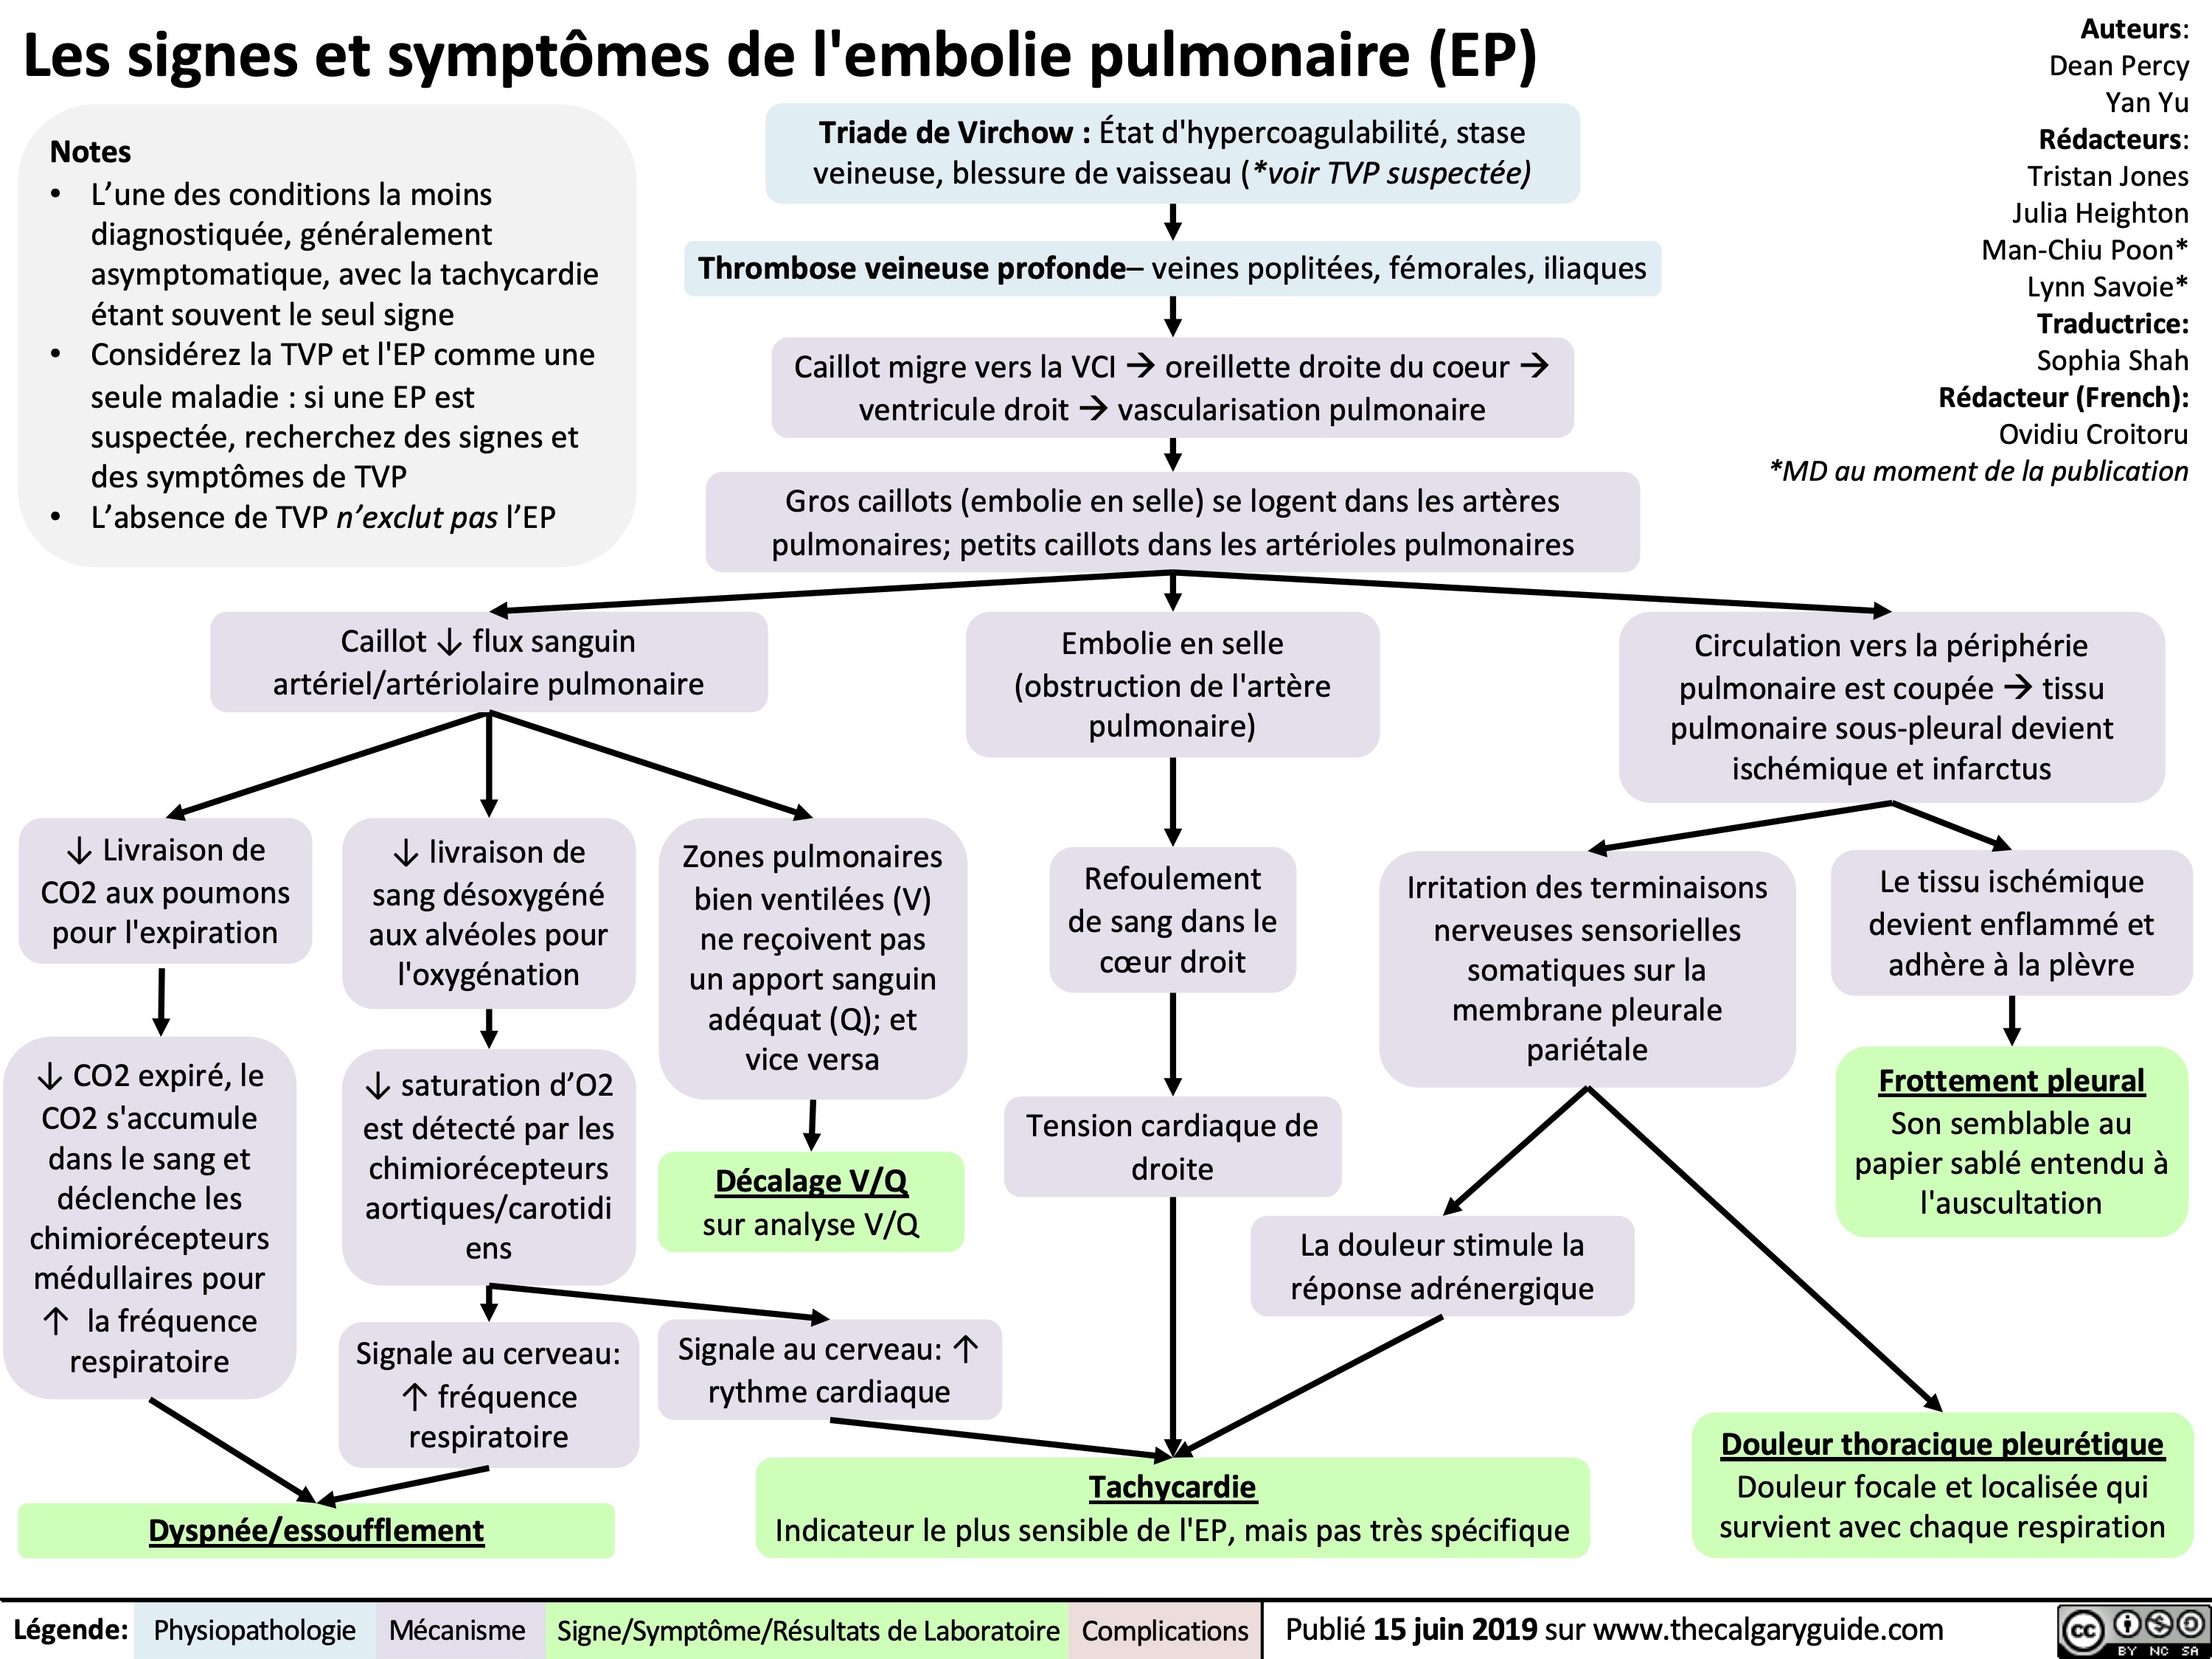 Les signes et symptômes de l'embolie pulmonaire (EP)

les-signes-et-symptomes-de-lembolie-pulmonaire-ep